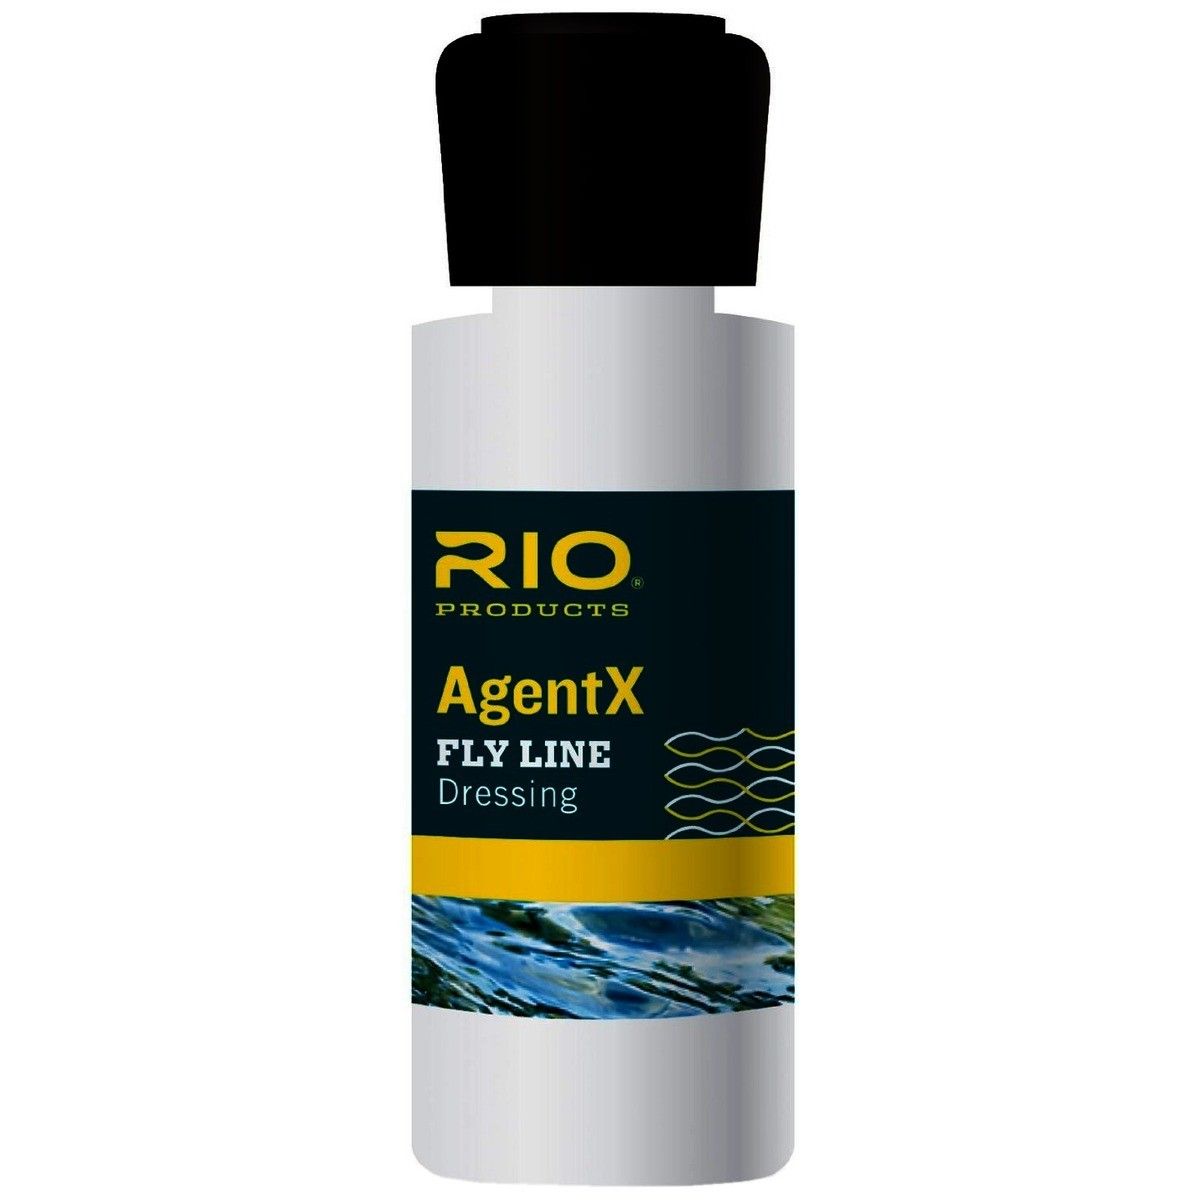 RIO Agent X Fly Line Dressing